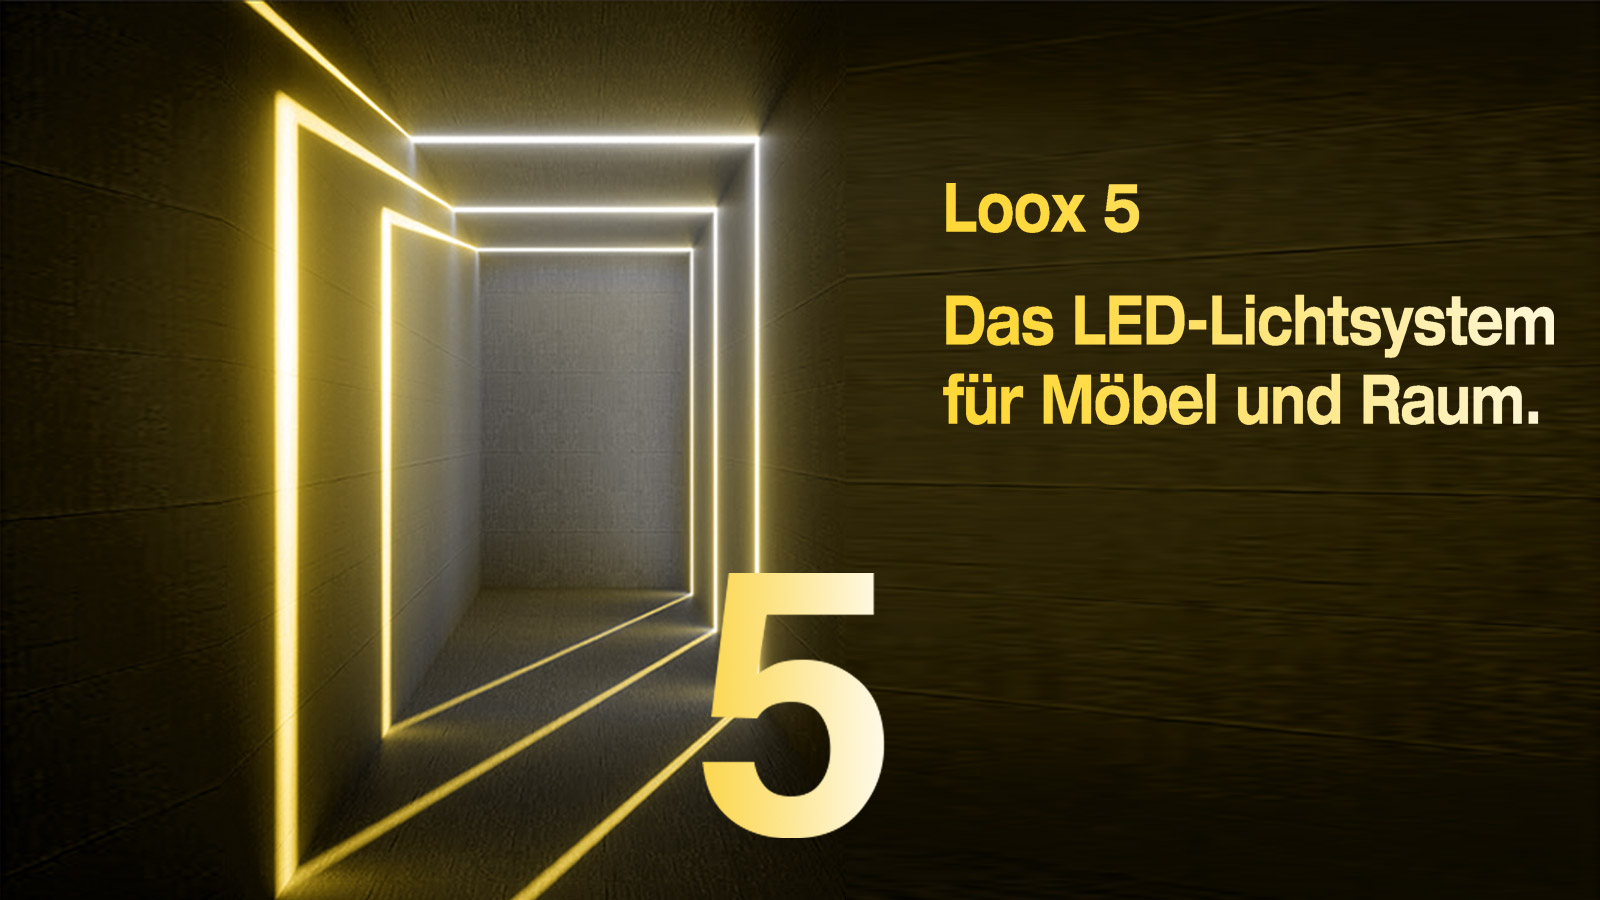 Loox 5 von Häfele: Das LED-Lichtsystem für Möbel und Raum.